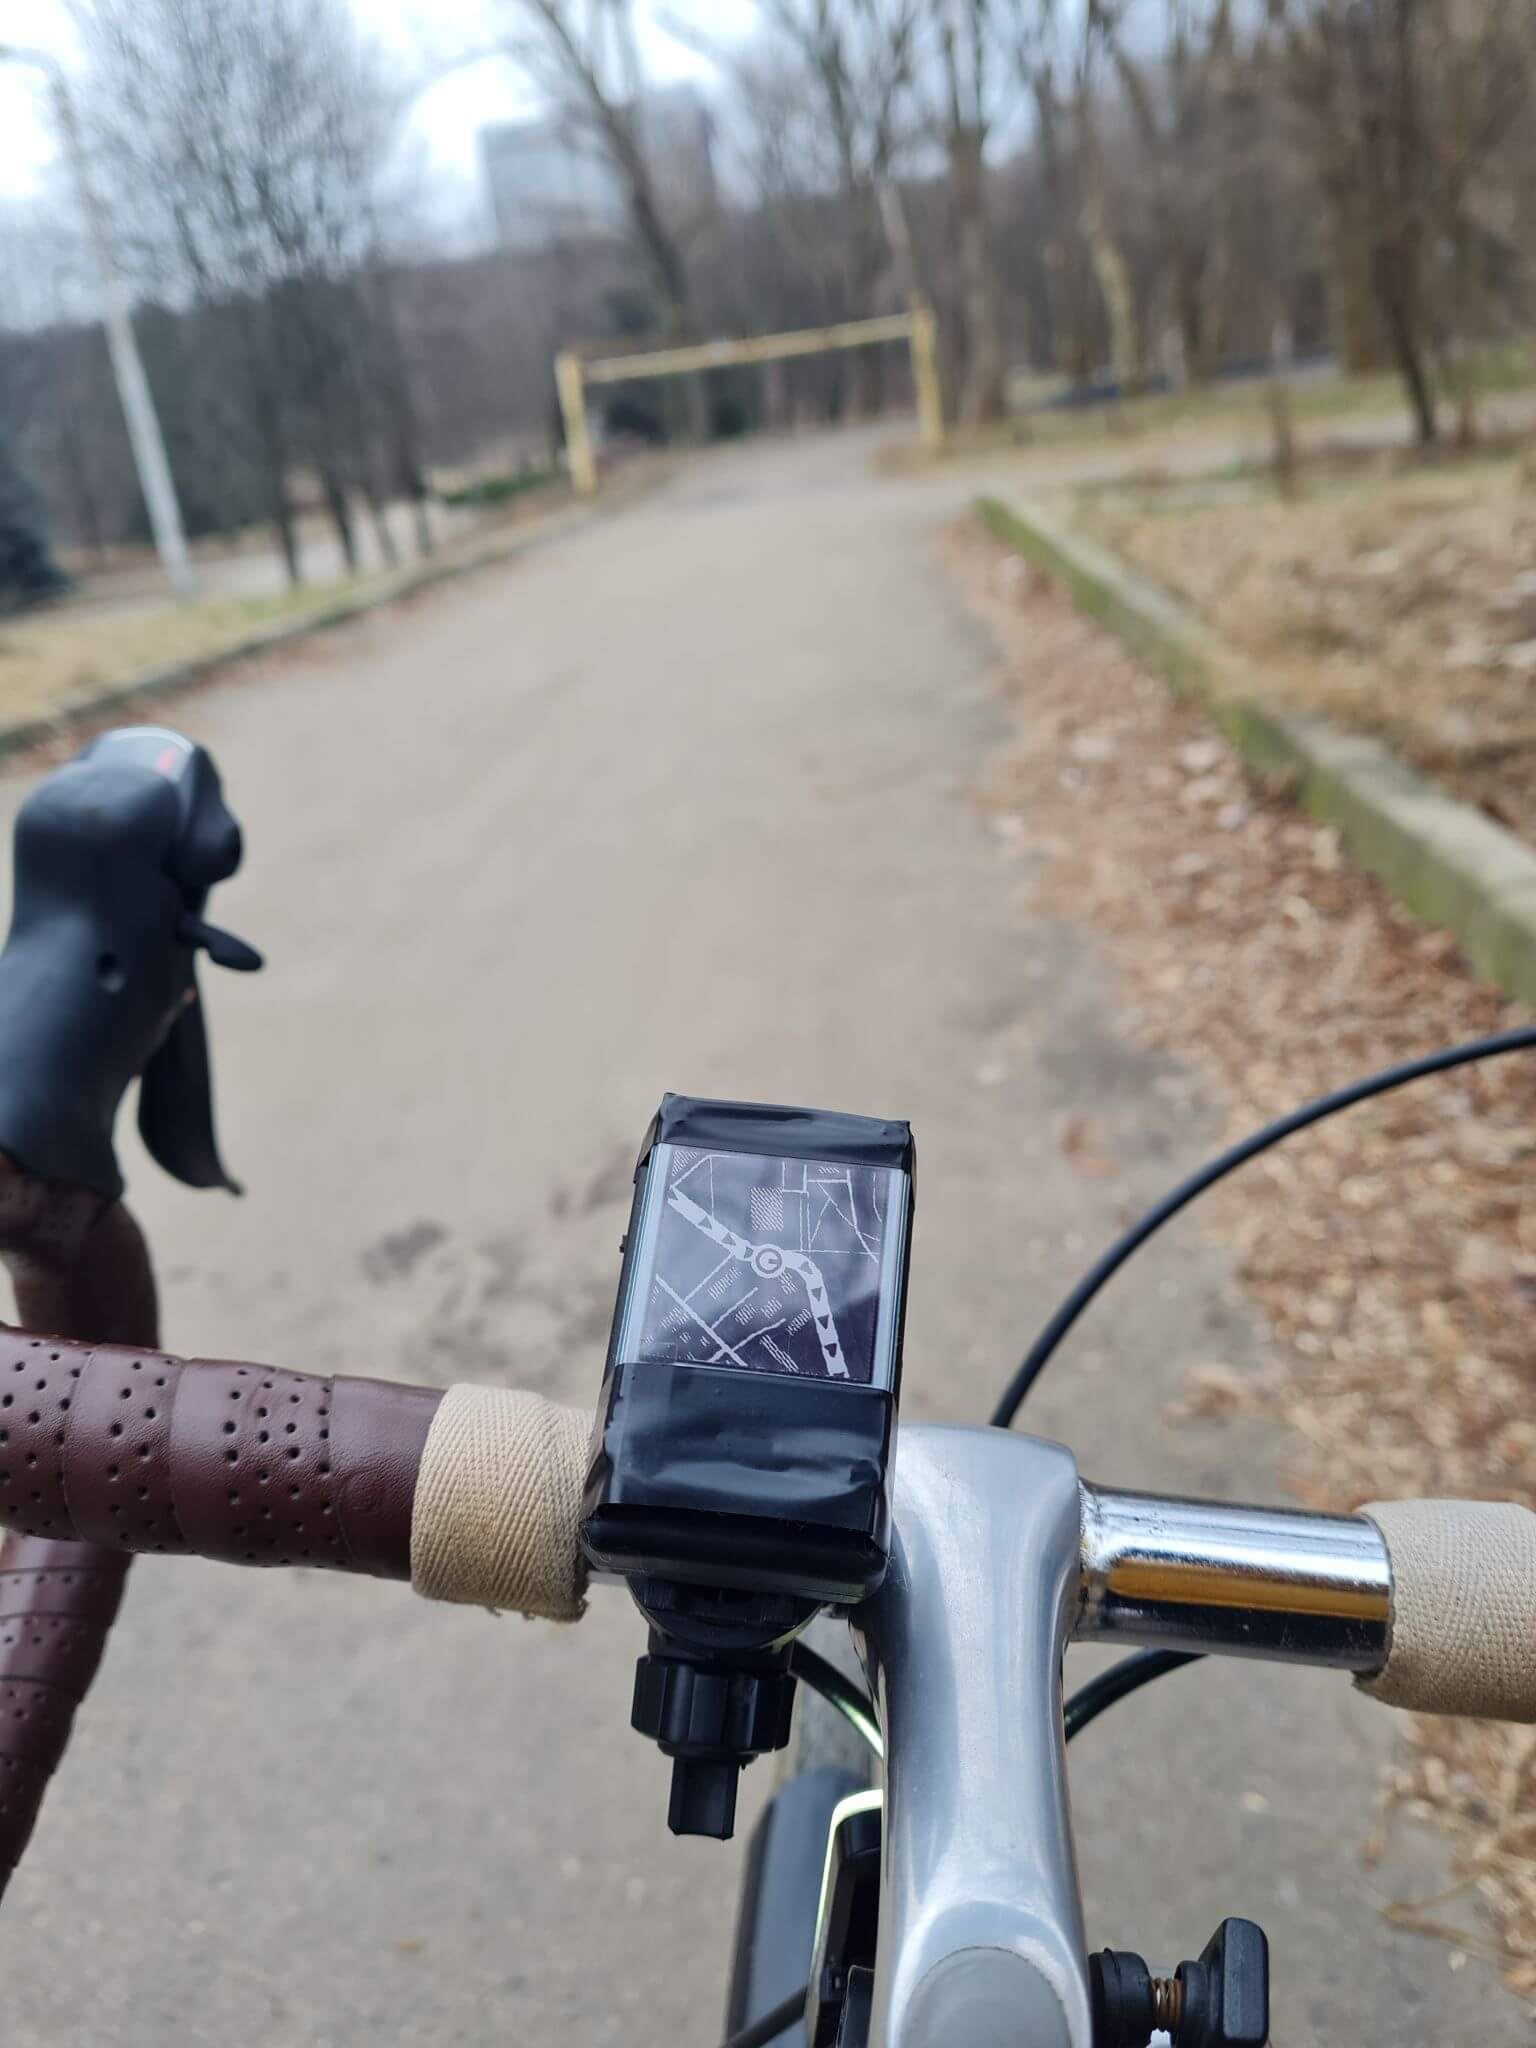 On a bike